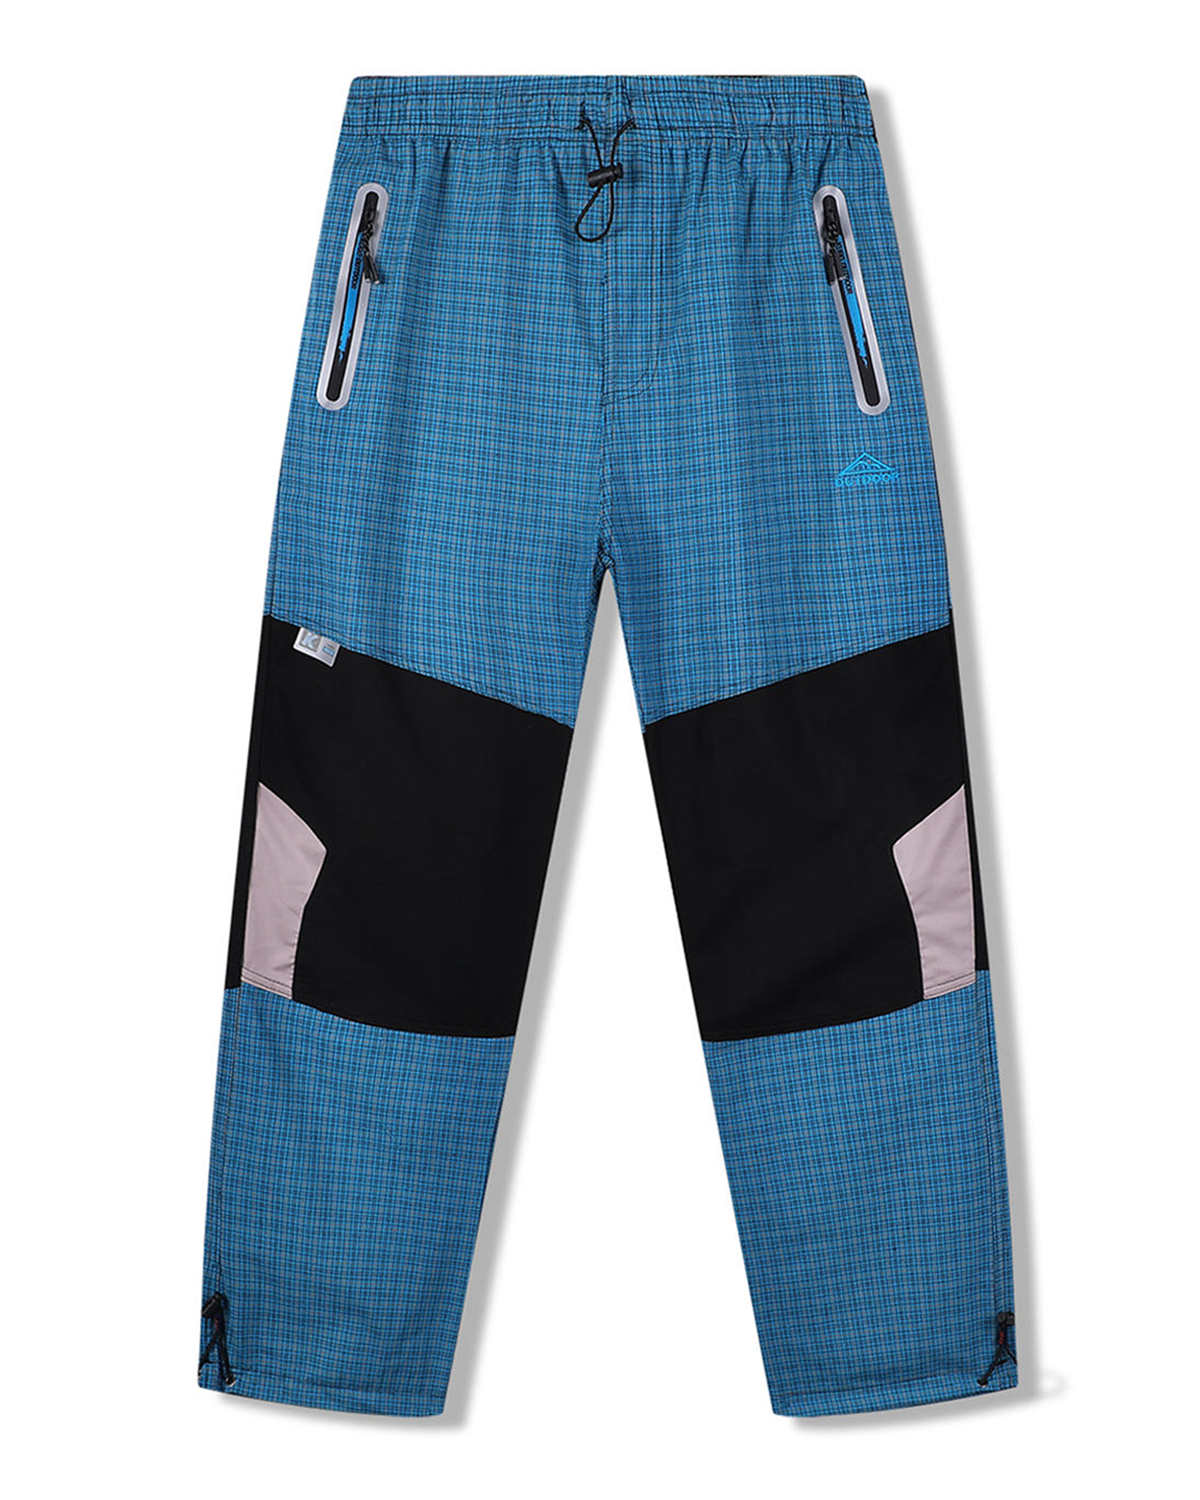 Pánské plátěné kalhoty - KUGO FK7610, tyrkysová Barva: Tyrkysová, Velikost: XL